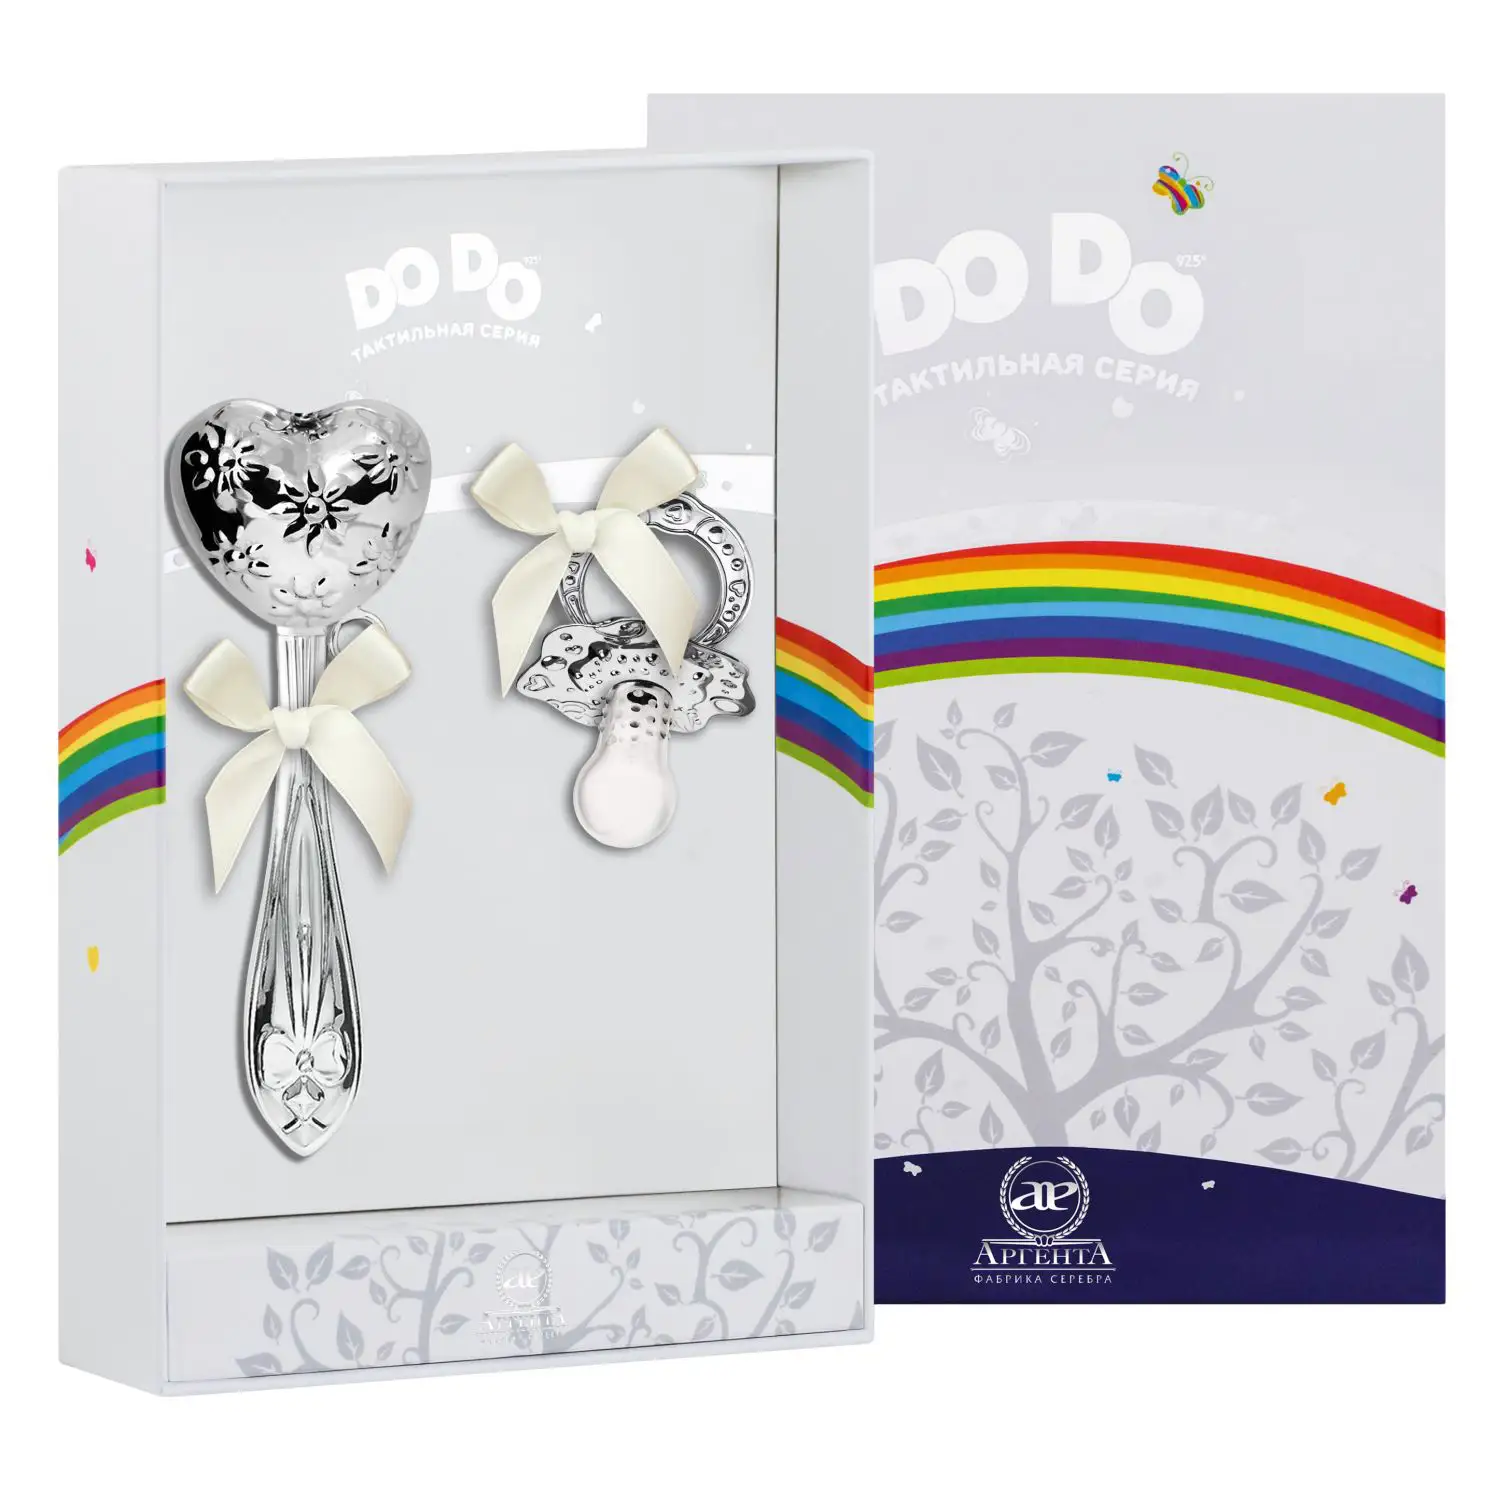 Набор для малышей DODO Сердце с цветами: погремушка и сувенир-пустышка (Серебро 925) набор для малышей dodo ангел погремушка и сувенир пустышка серебро 925